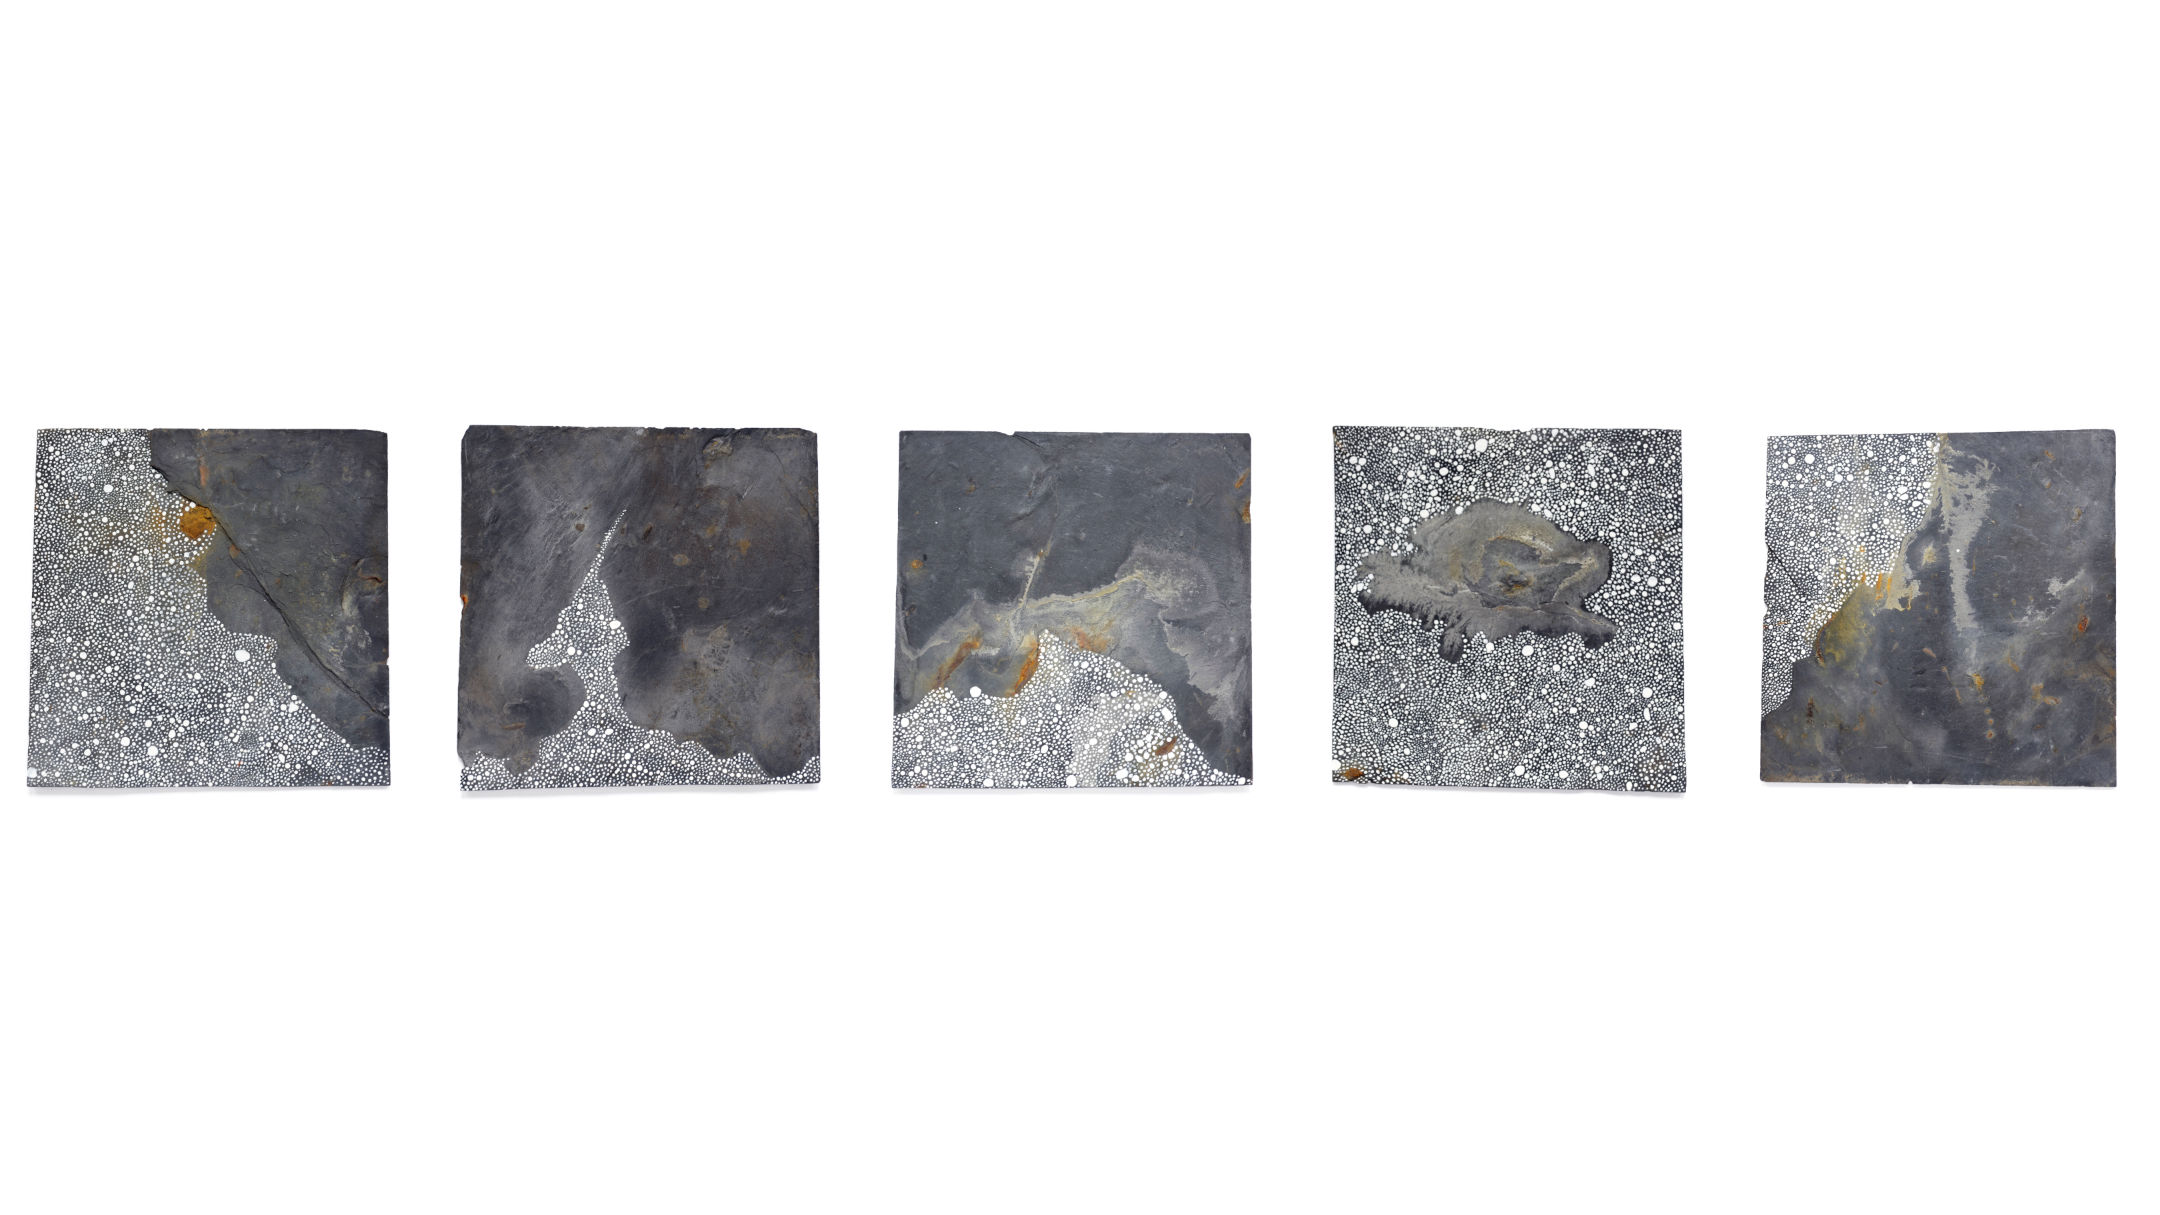 Série de 5 ardoises abstractions pointillistes blanches jouant avec la matière ardoise du support évocation de cimes et montagnes sous la neige